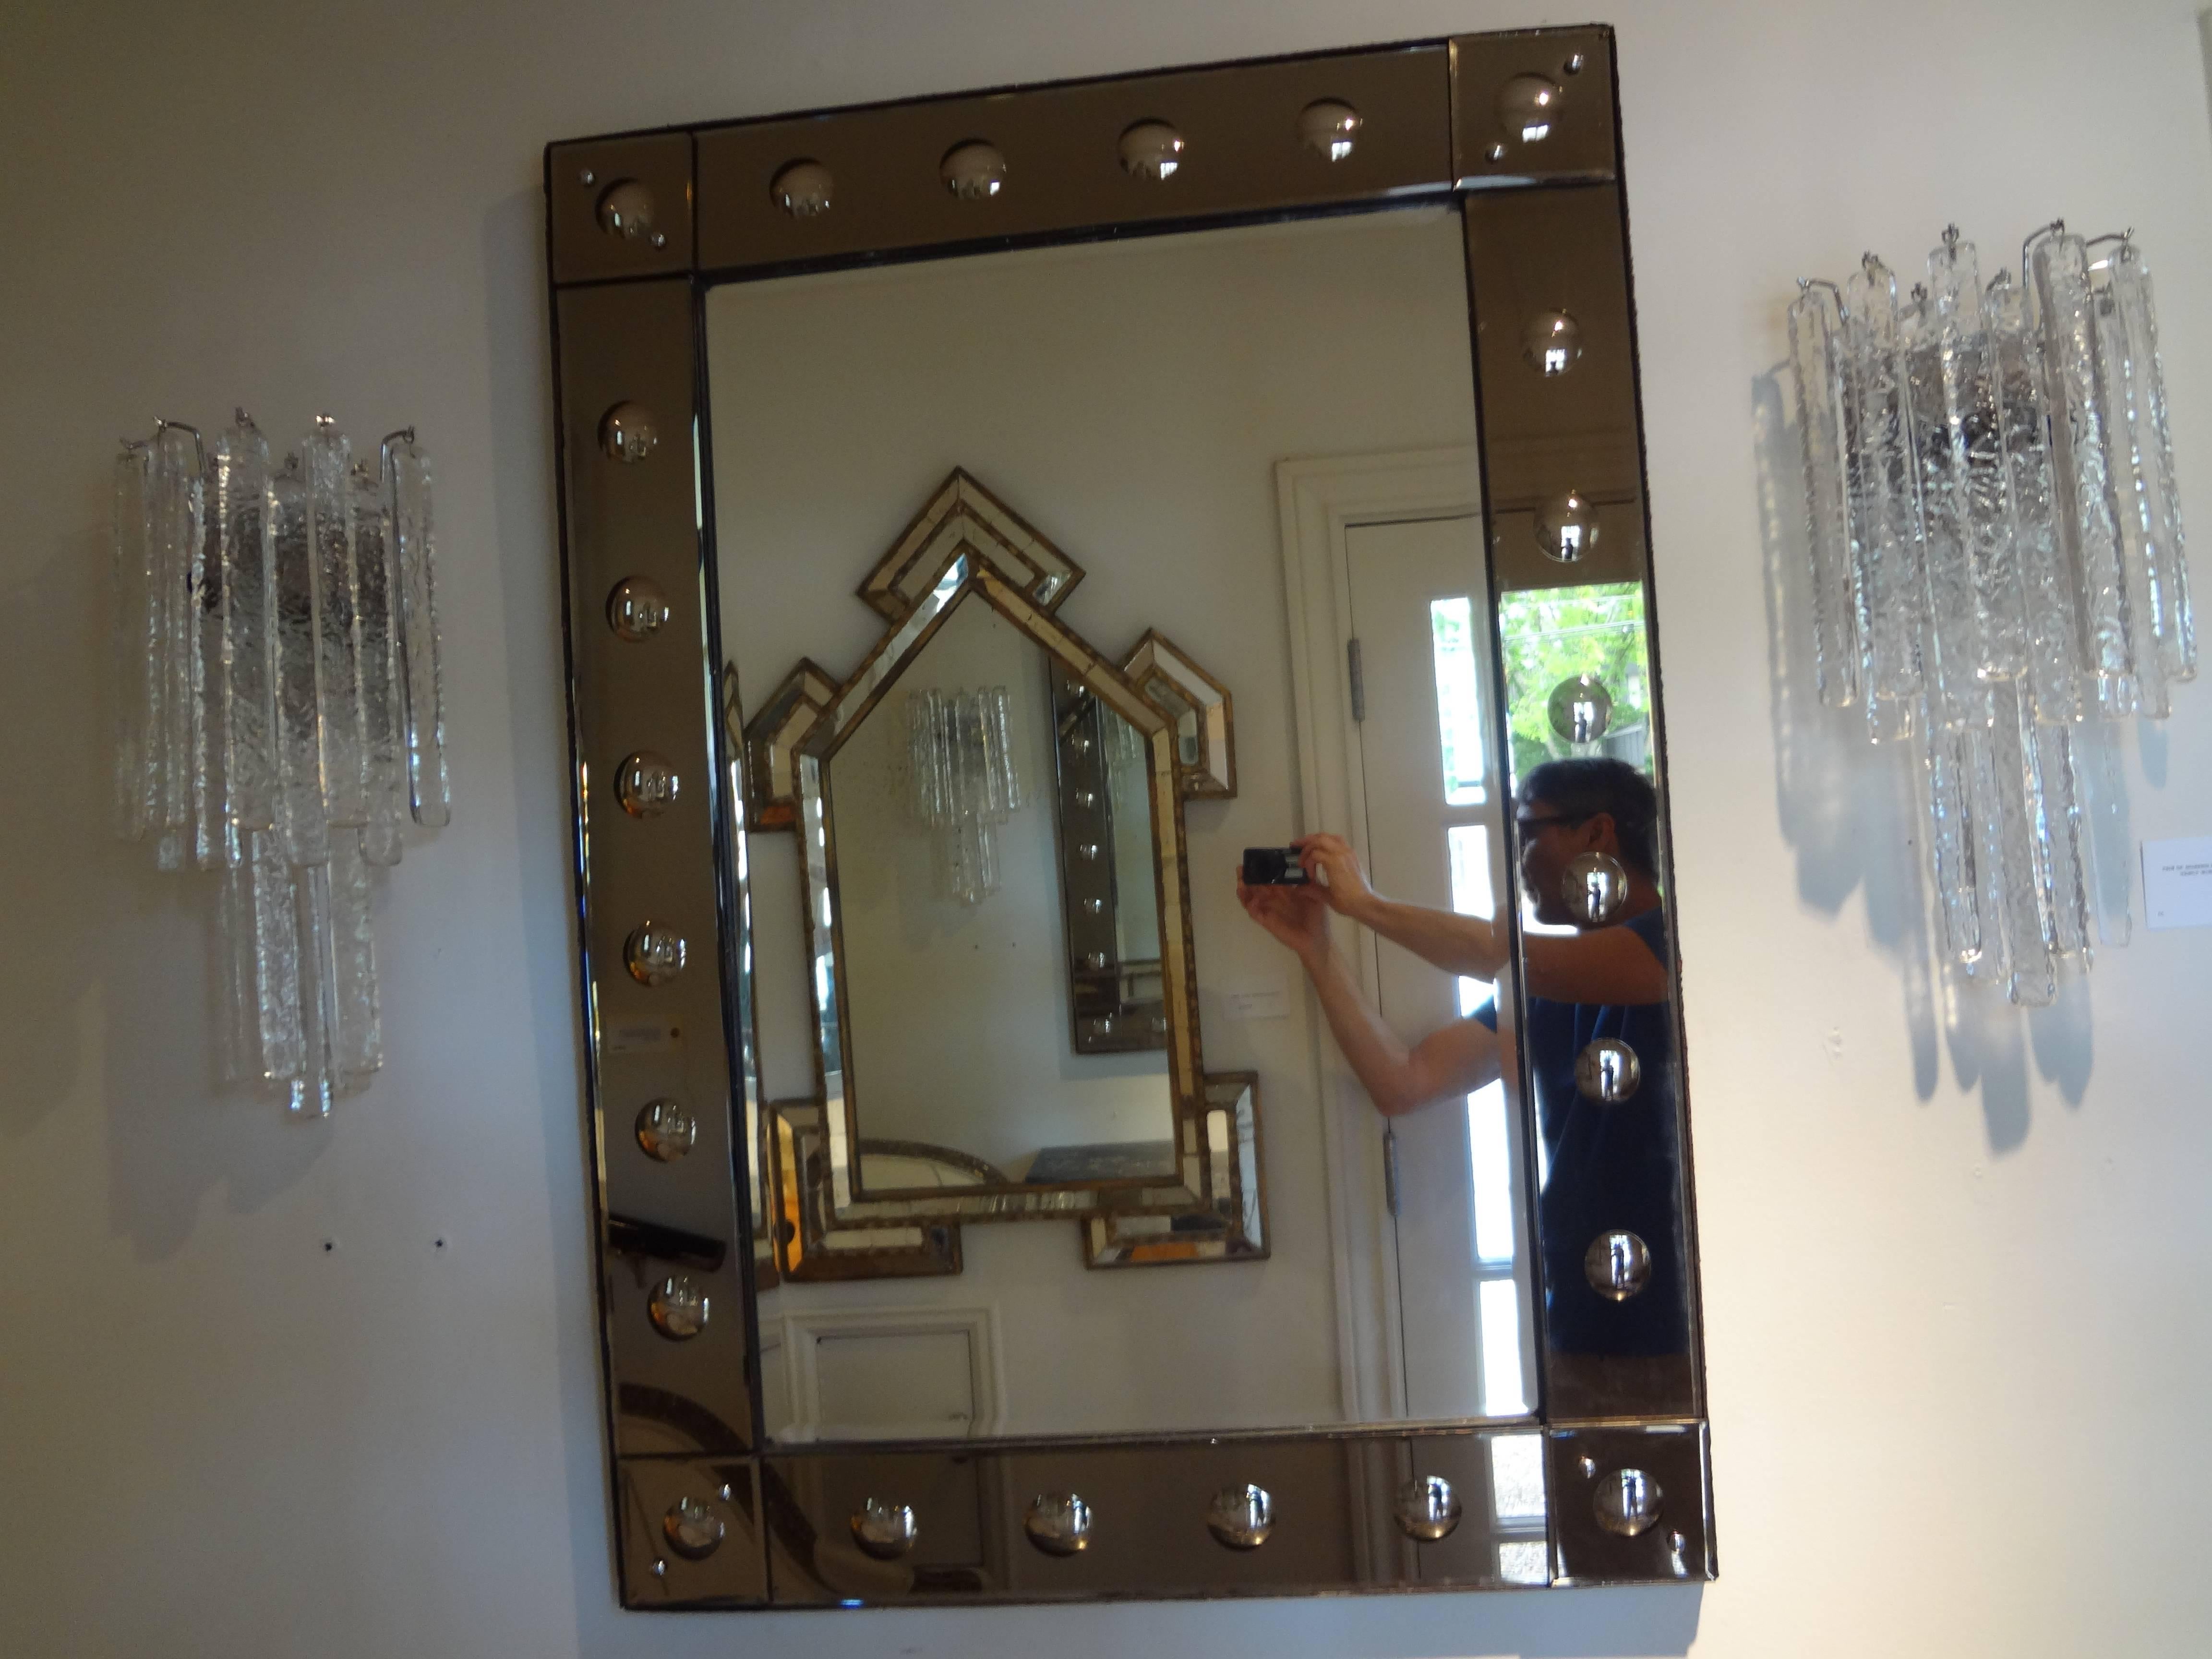 Miroir vénitien rectangulaire du milieu du siècle en bronze biseauté.
Miroir vénitien vintage inhabituel avec une bordure en bronze et des détails circulaires convexes entourant un centre biseauté en miroir argenté. Ce miroir peut être suspendu